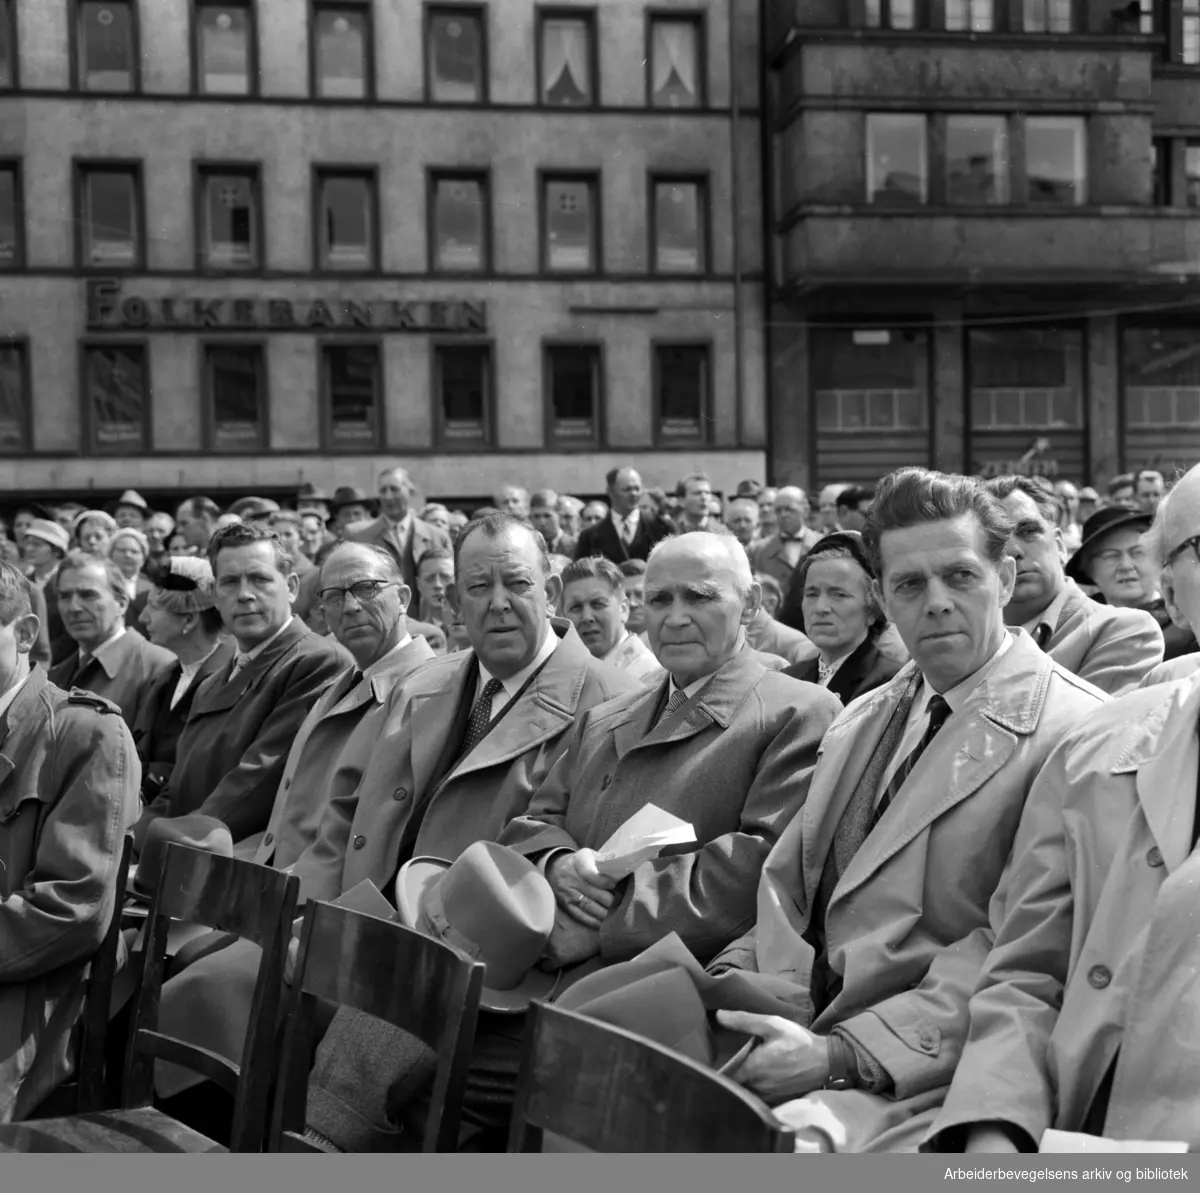 Avdukningen av Per Palle Storms "Pioneren" på Youngstorget 18. Mai 1958. Sittende i midten: Trygve Lie.